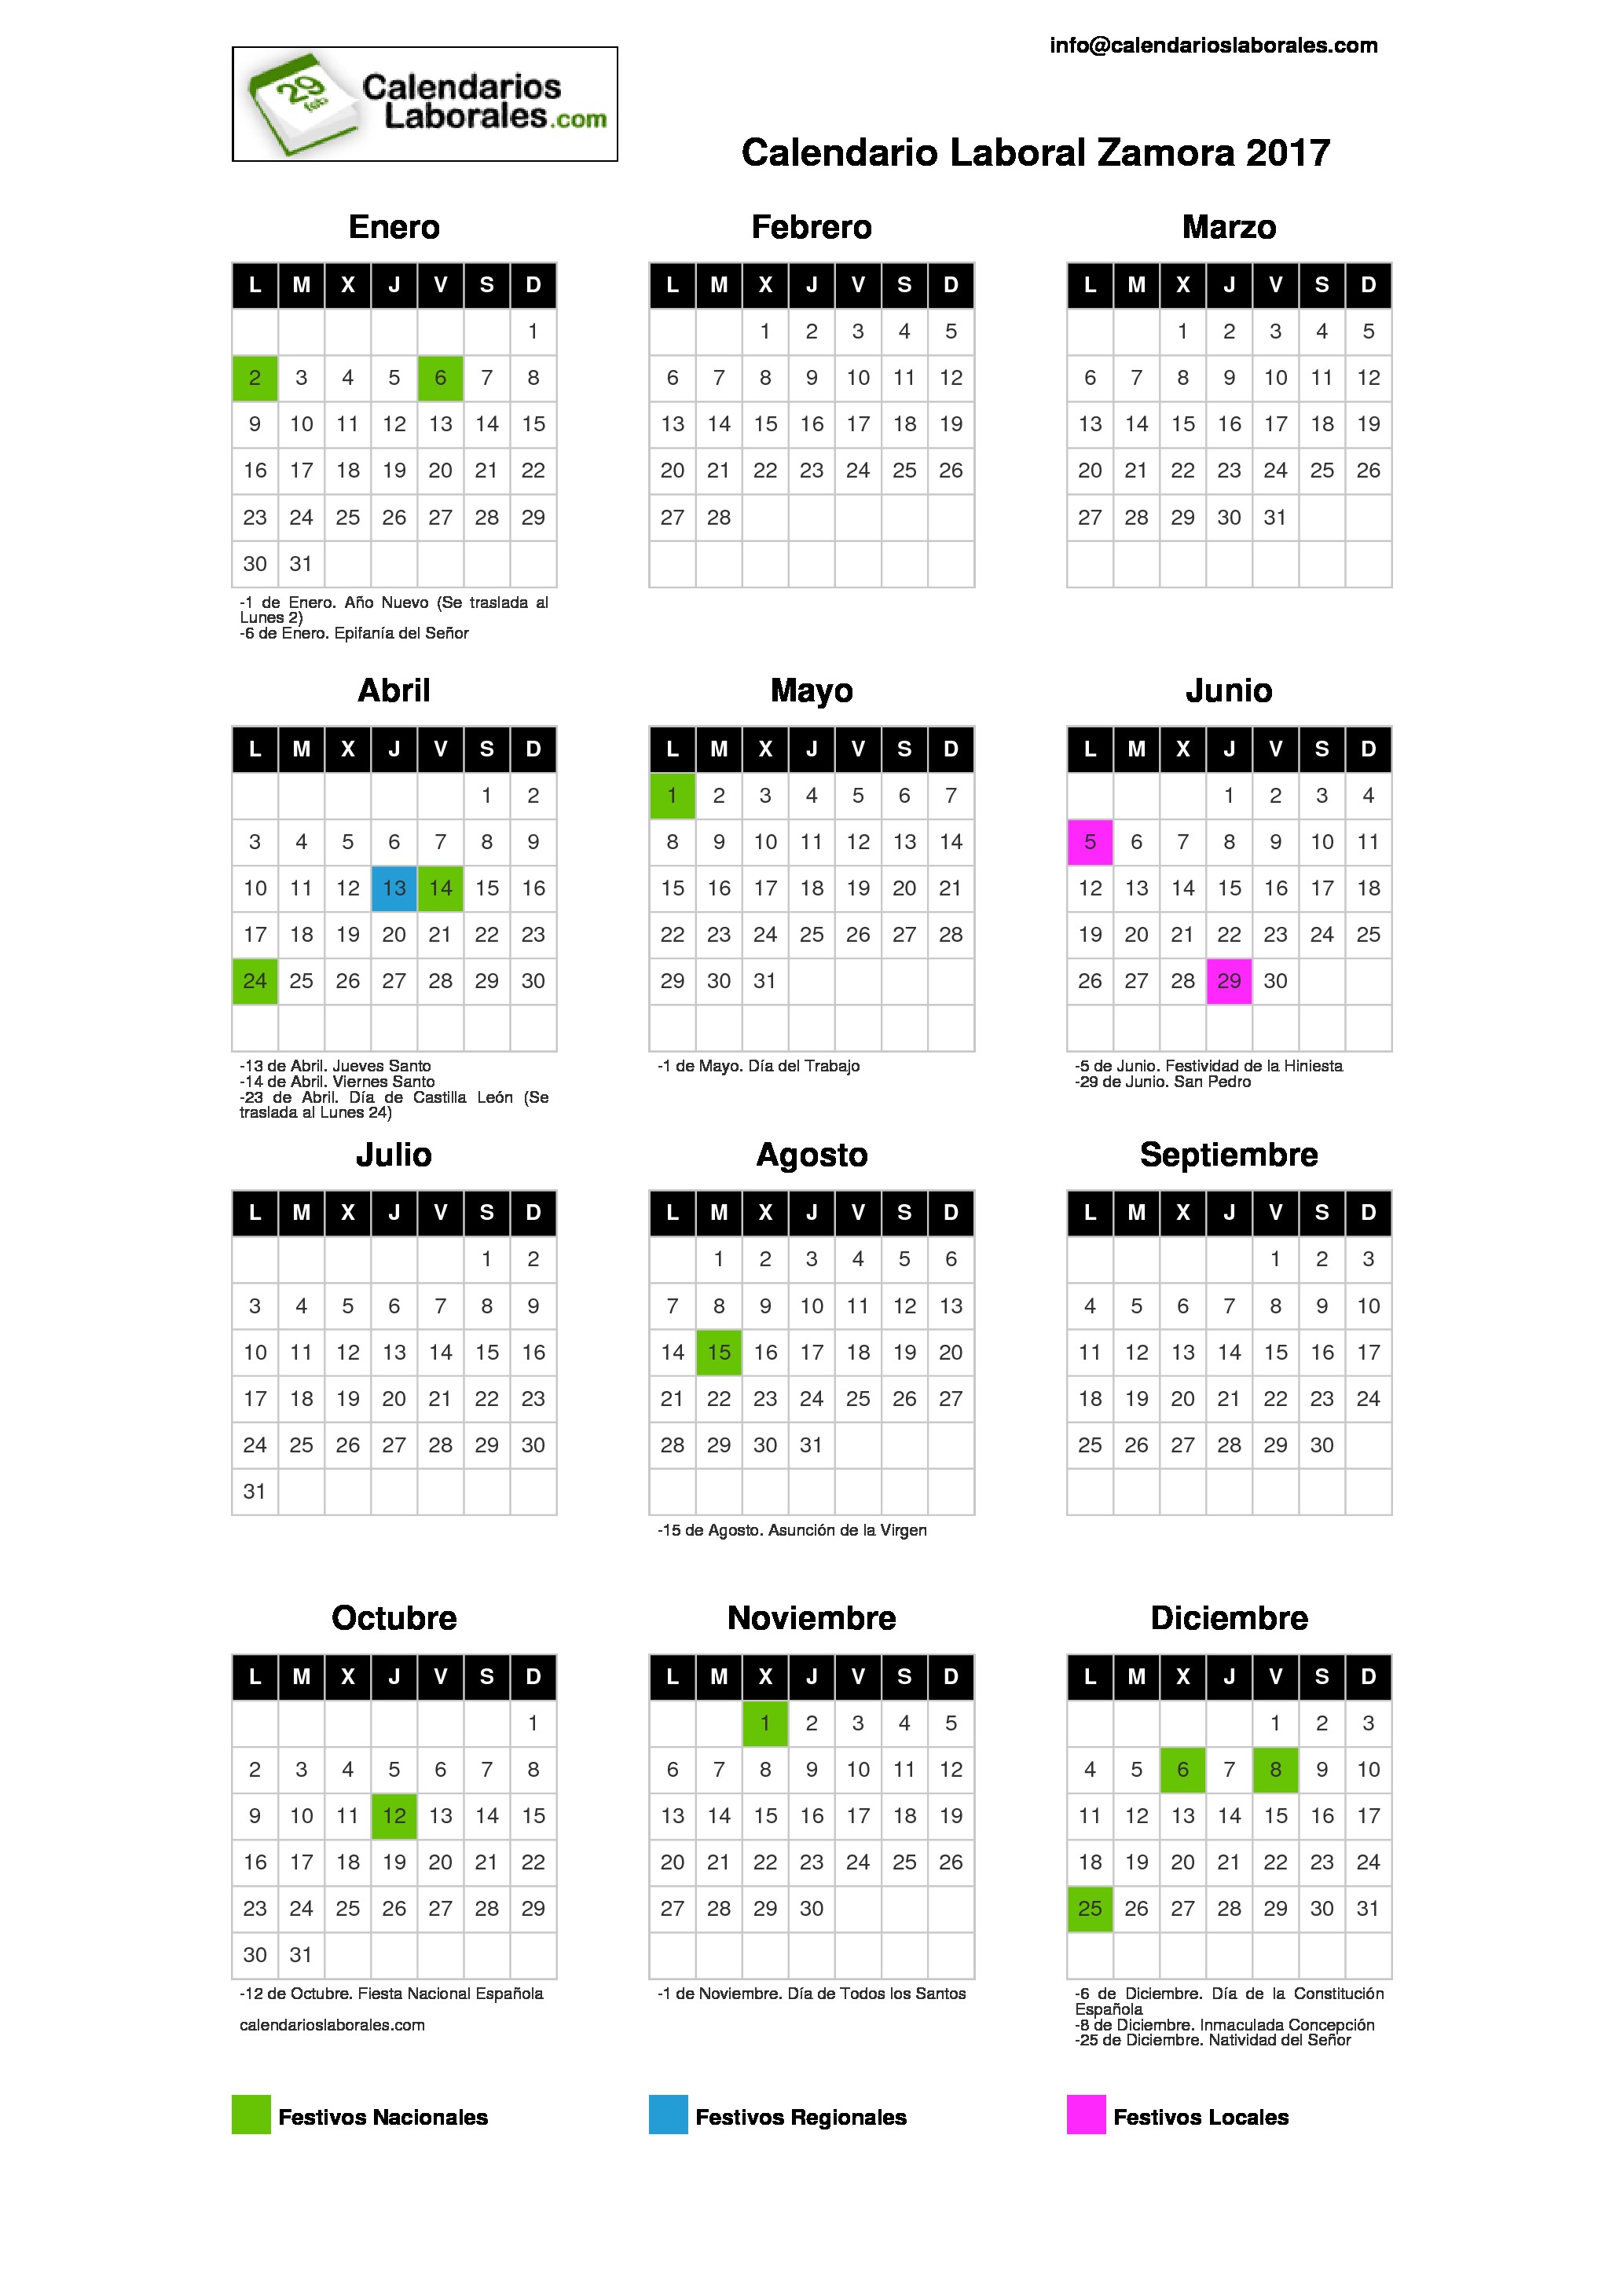 Calendario Laboral Zamora 2017